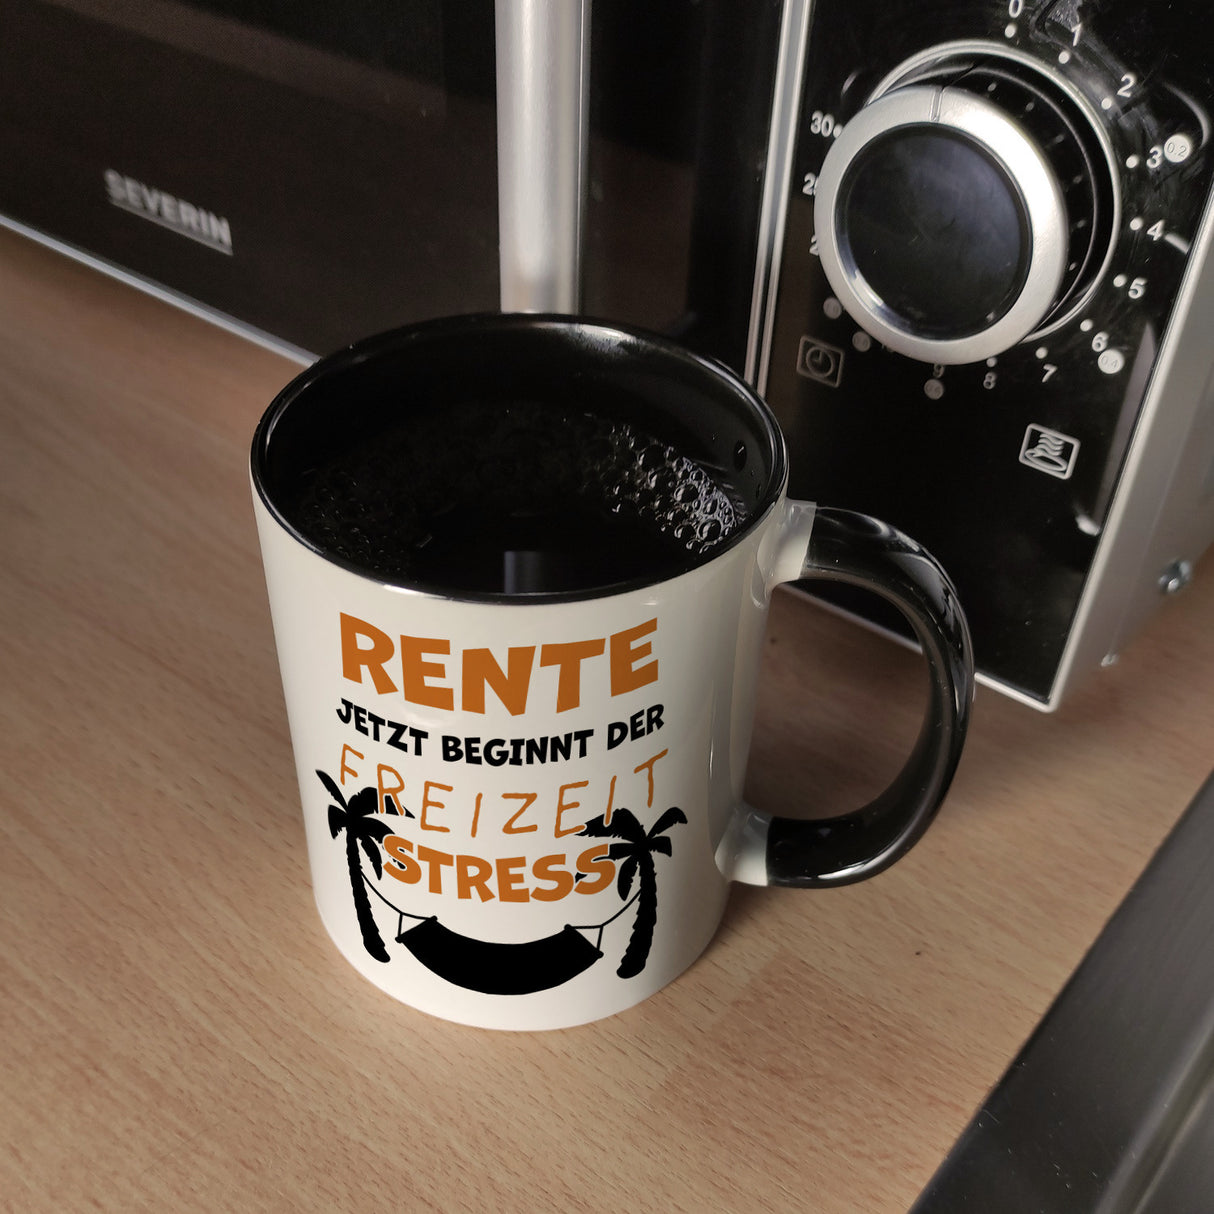 Rente - jetzt beginnt der Freizeitstress Kaffeebecher